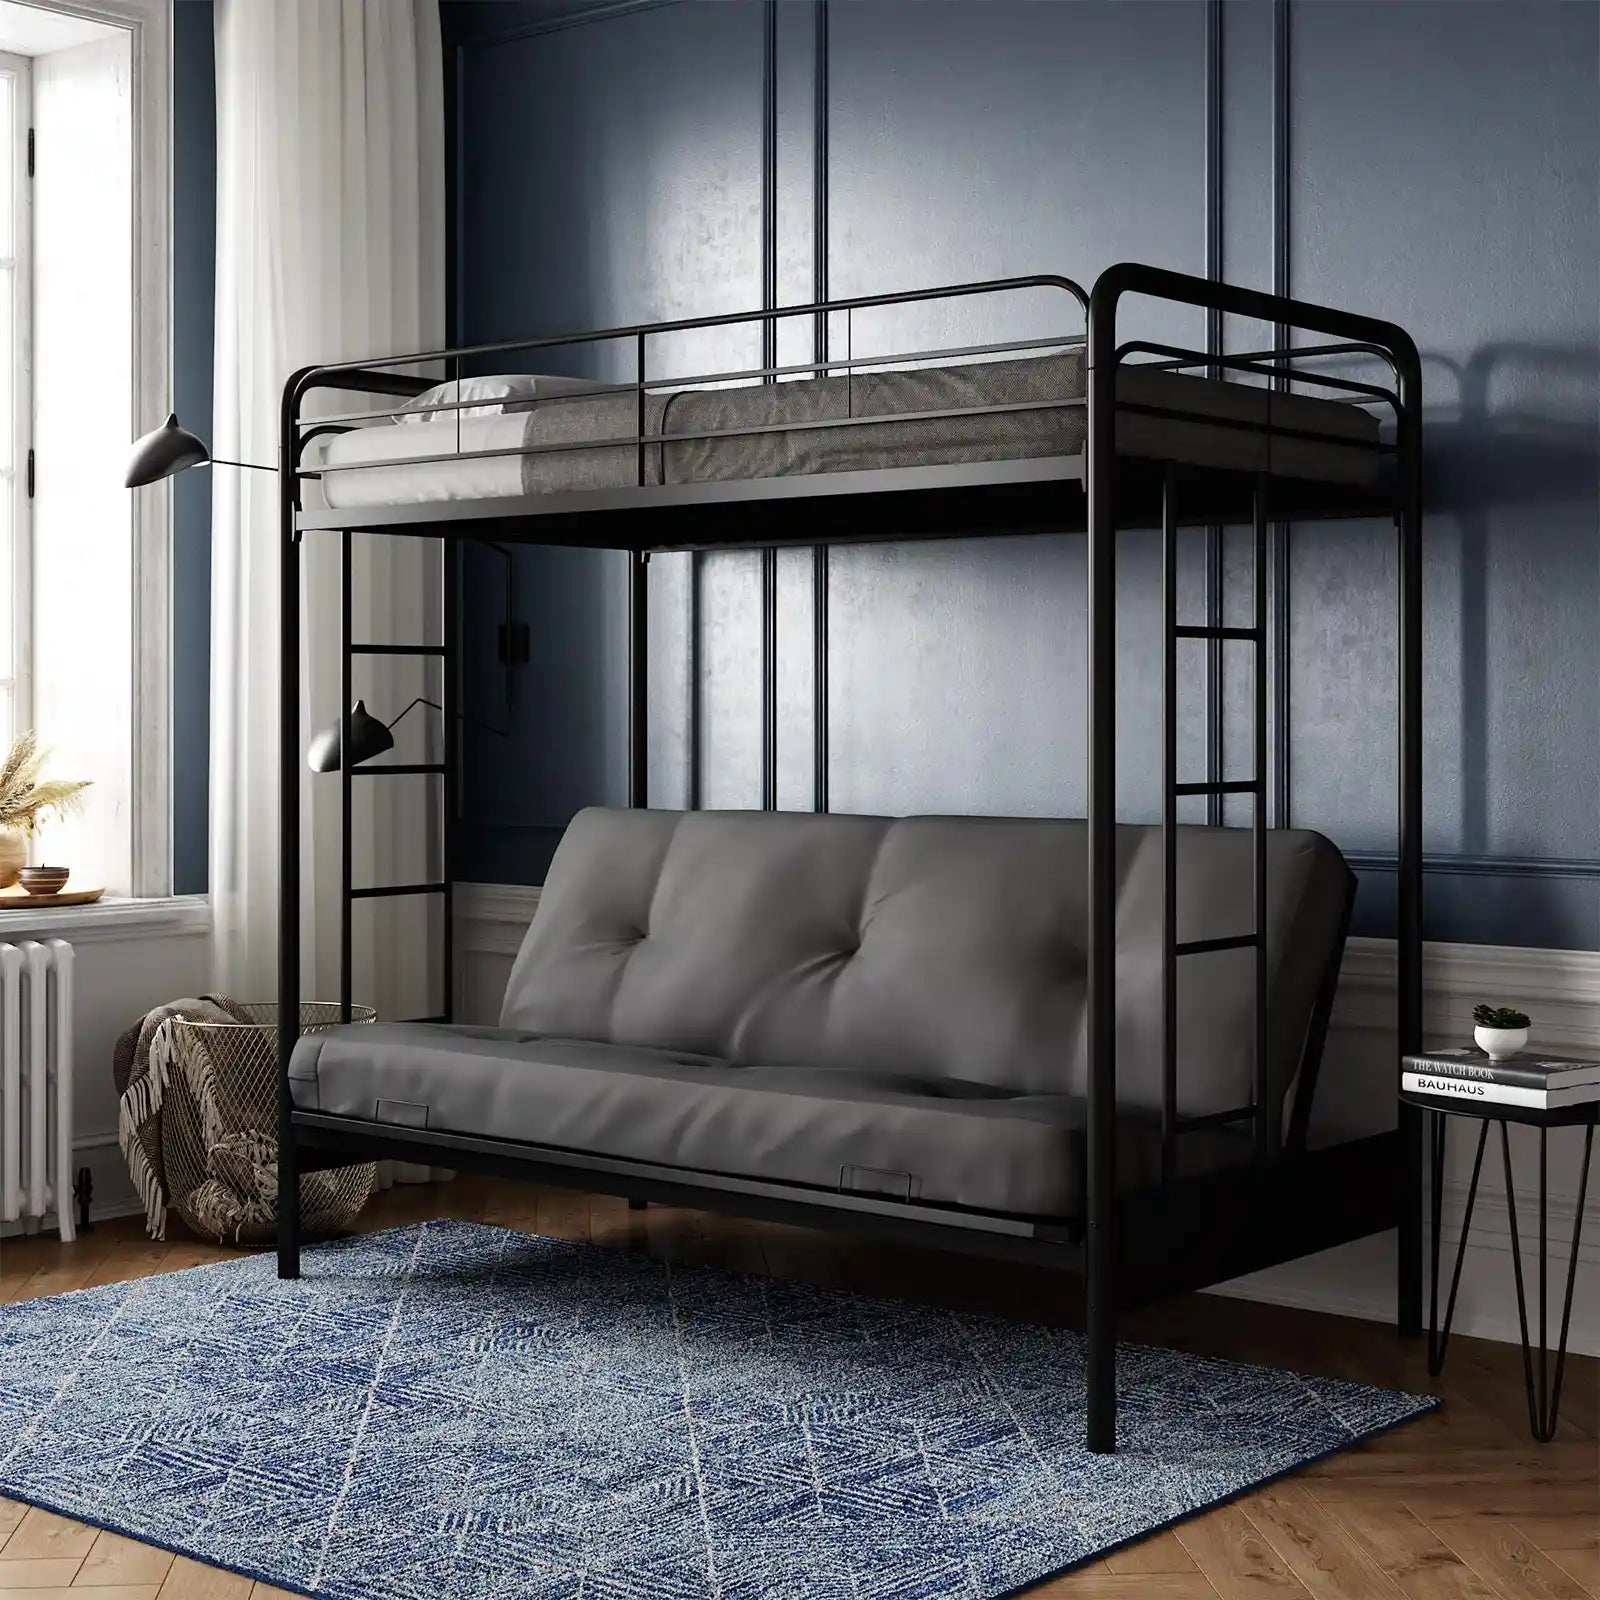 Litera de metal con dos camas individuales sobre futón